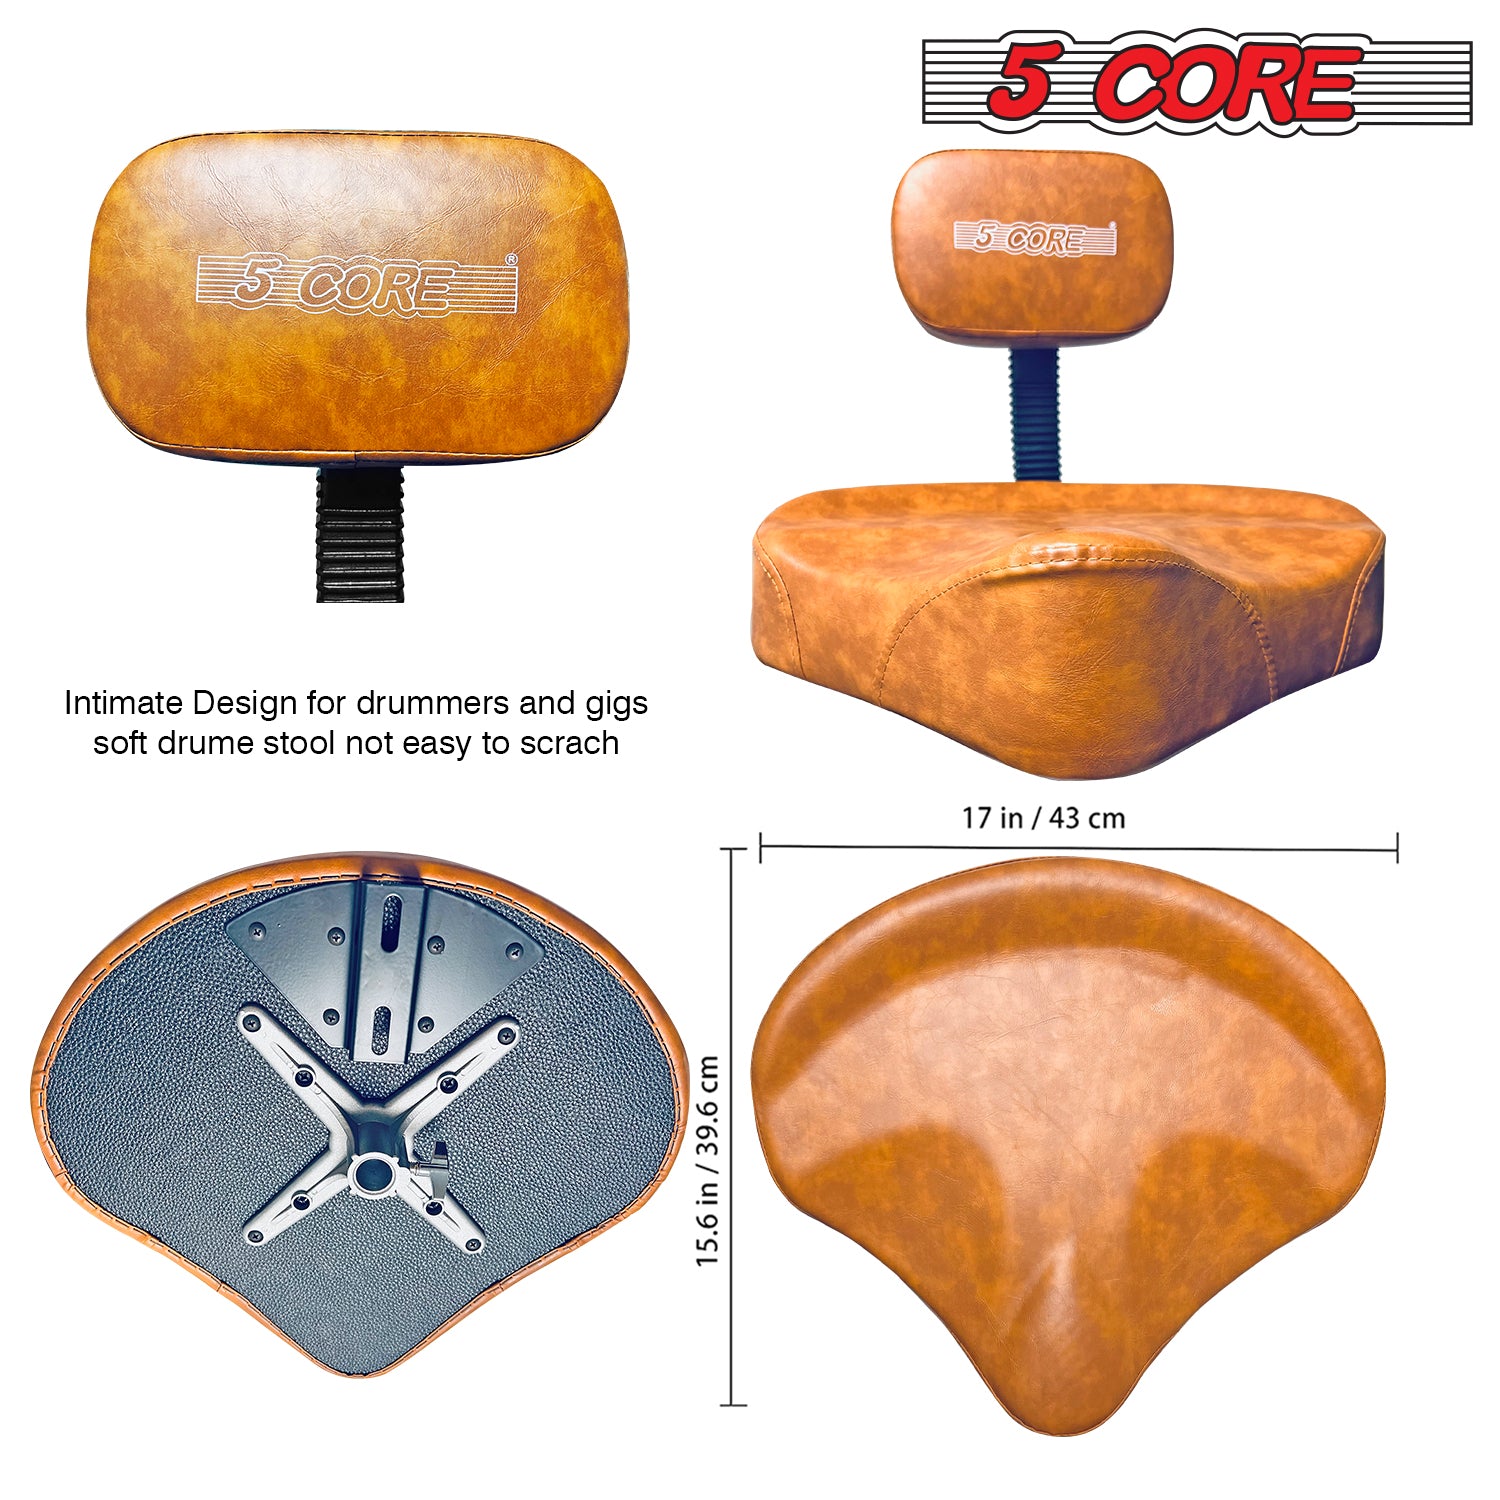 Ergonomic Design: 5 Core Drum Throne Back Rest Ensures Proper Posture and Support